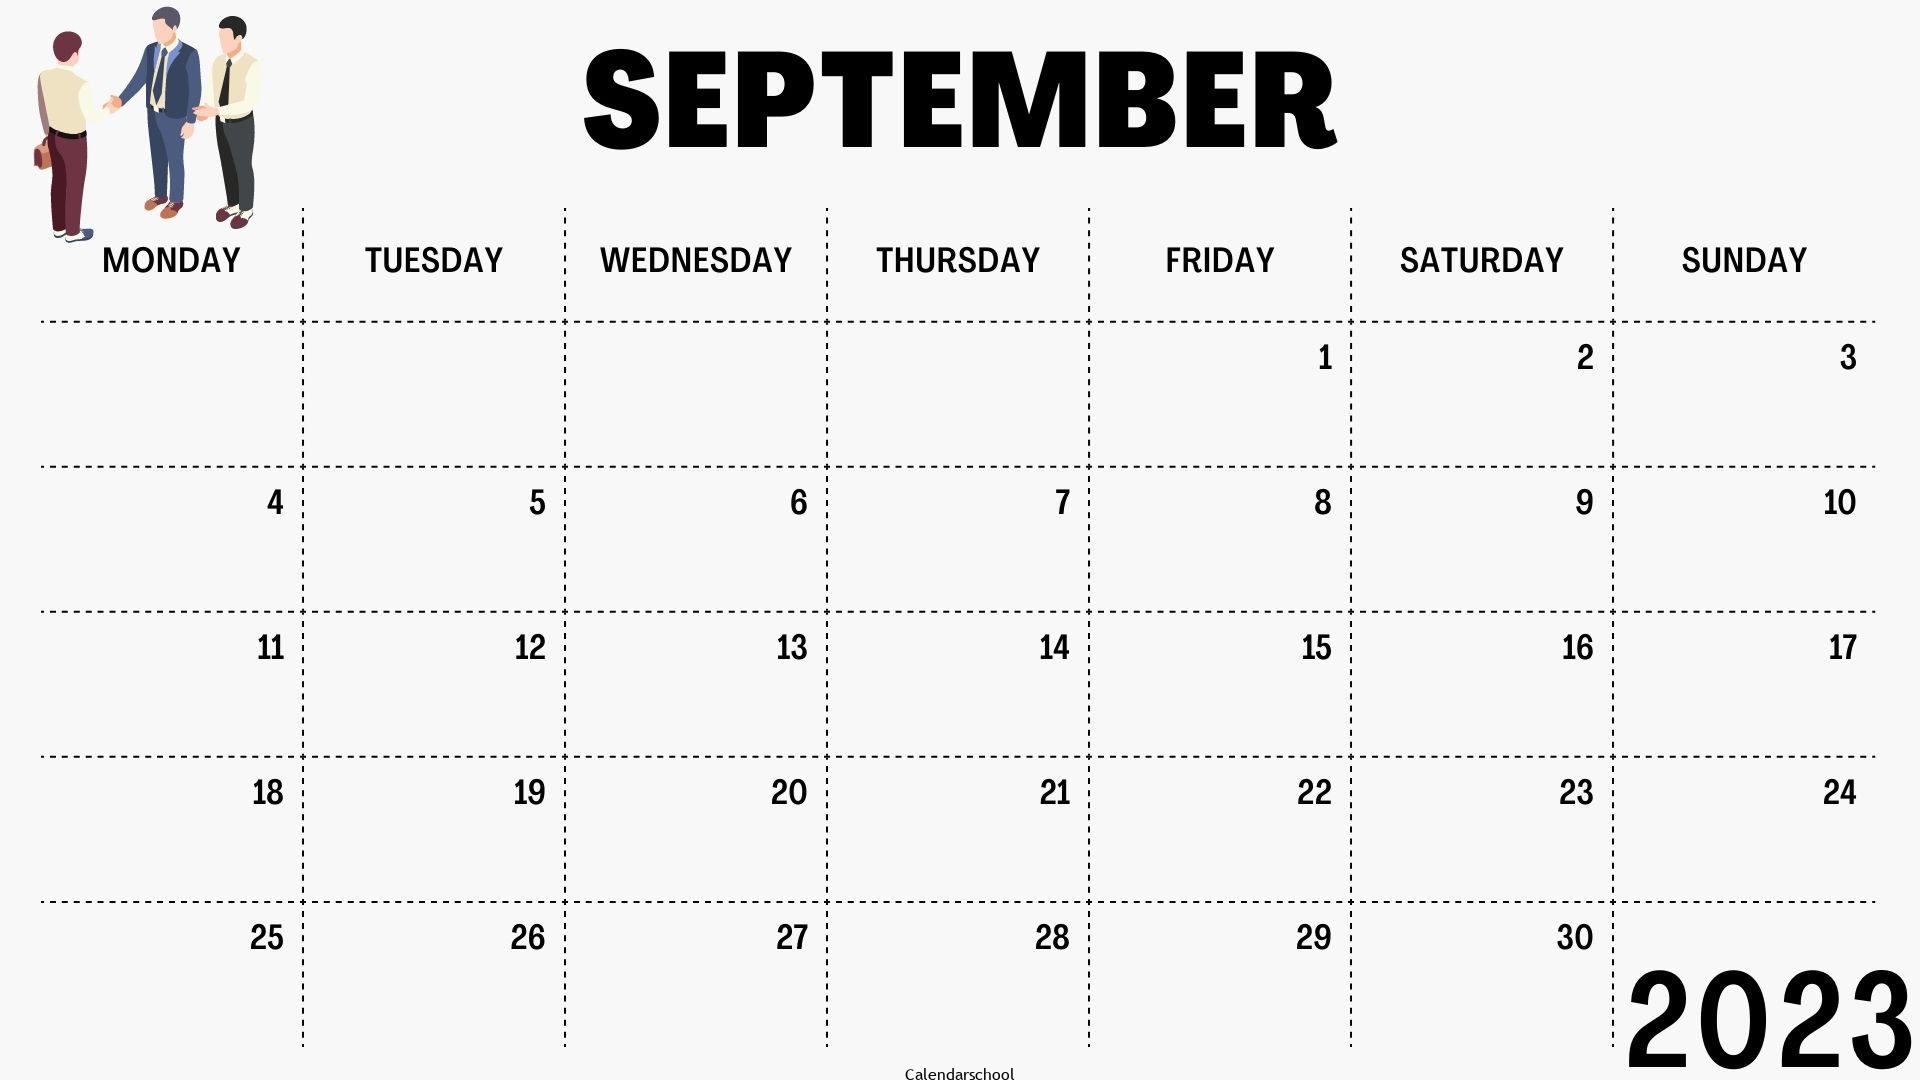 September 2023 Printable Calendar By Week